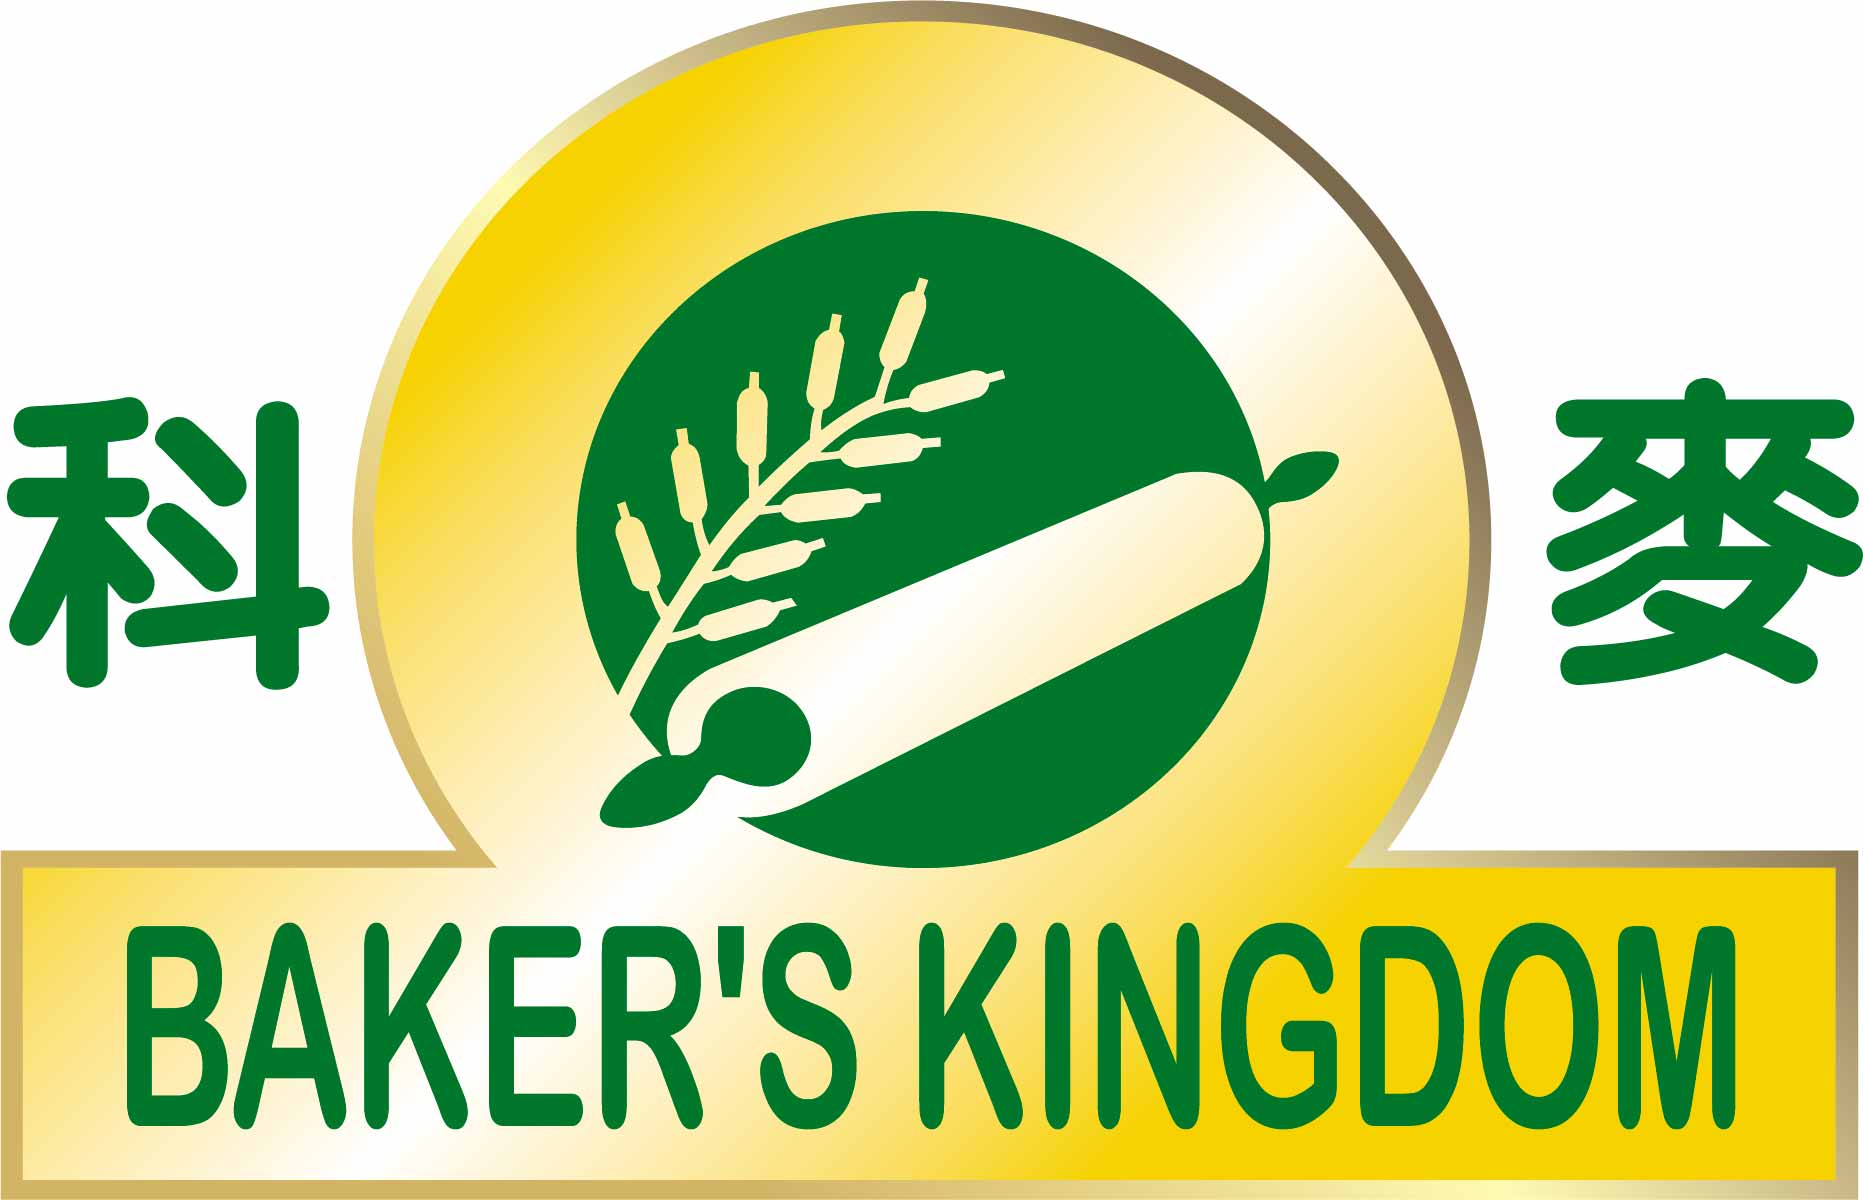 BAKER'S KINGDOM INT'L INC.